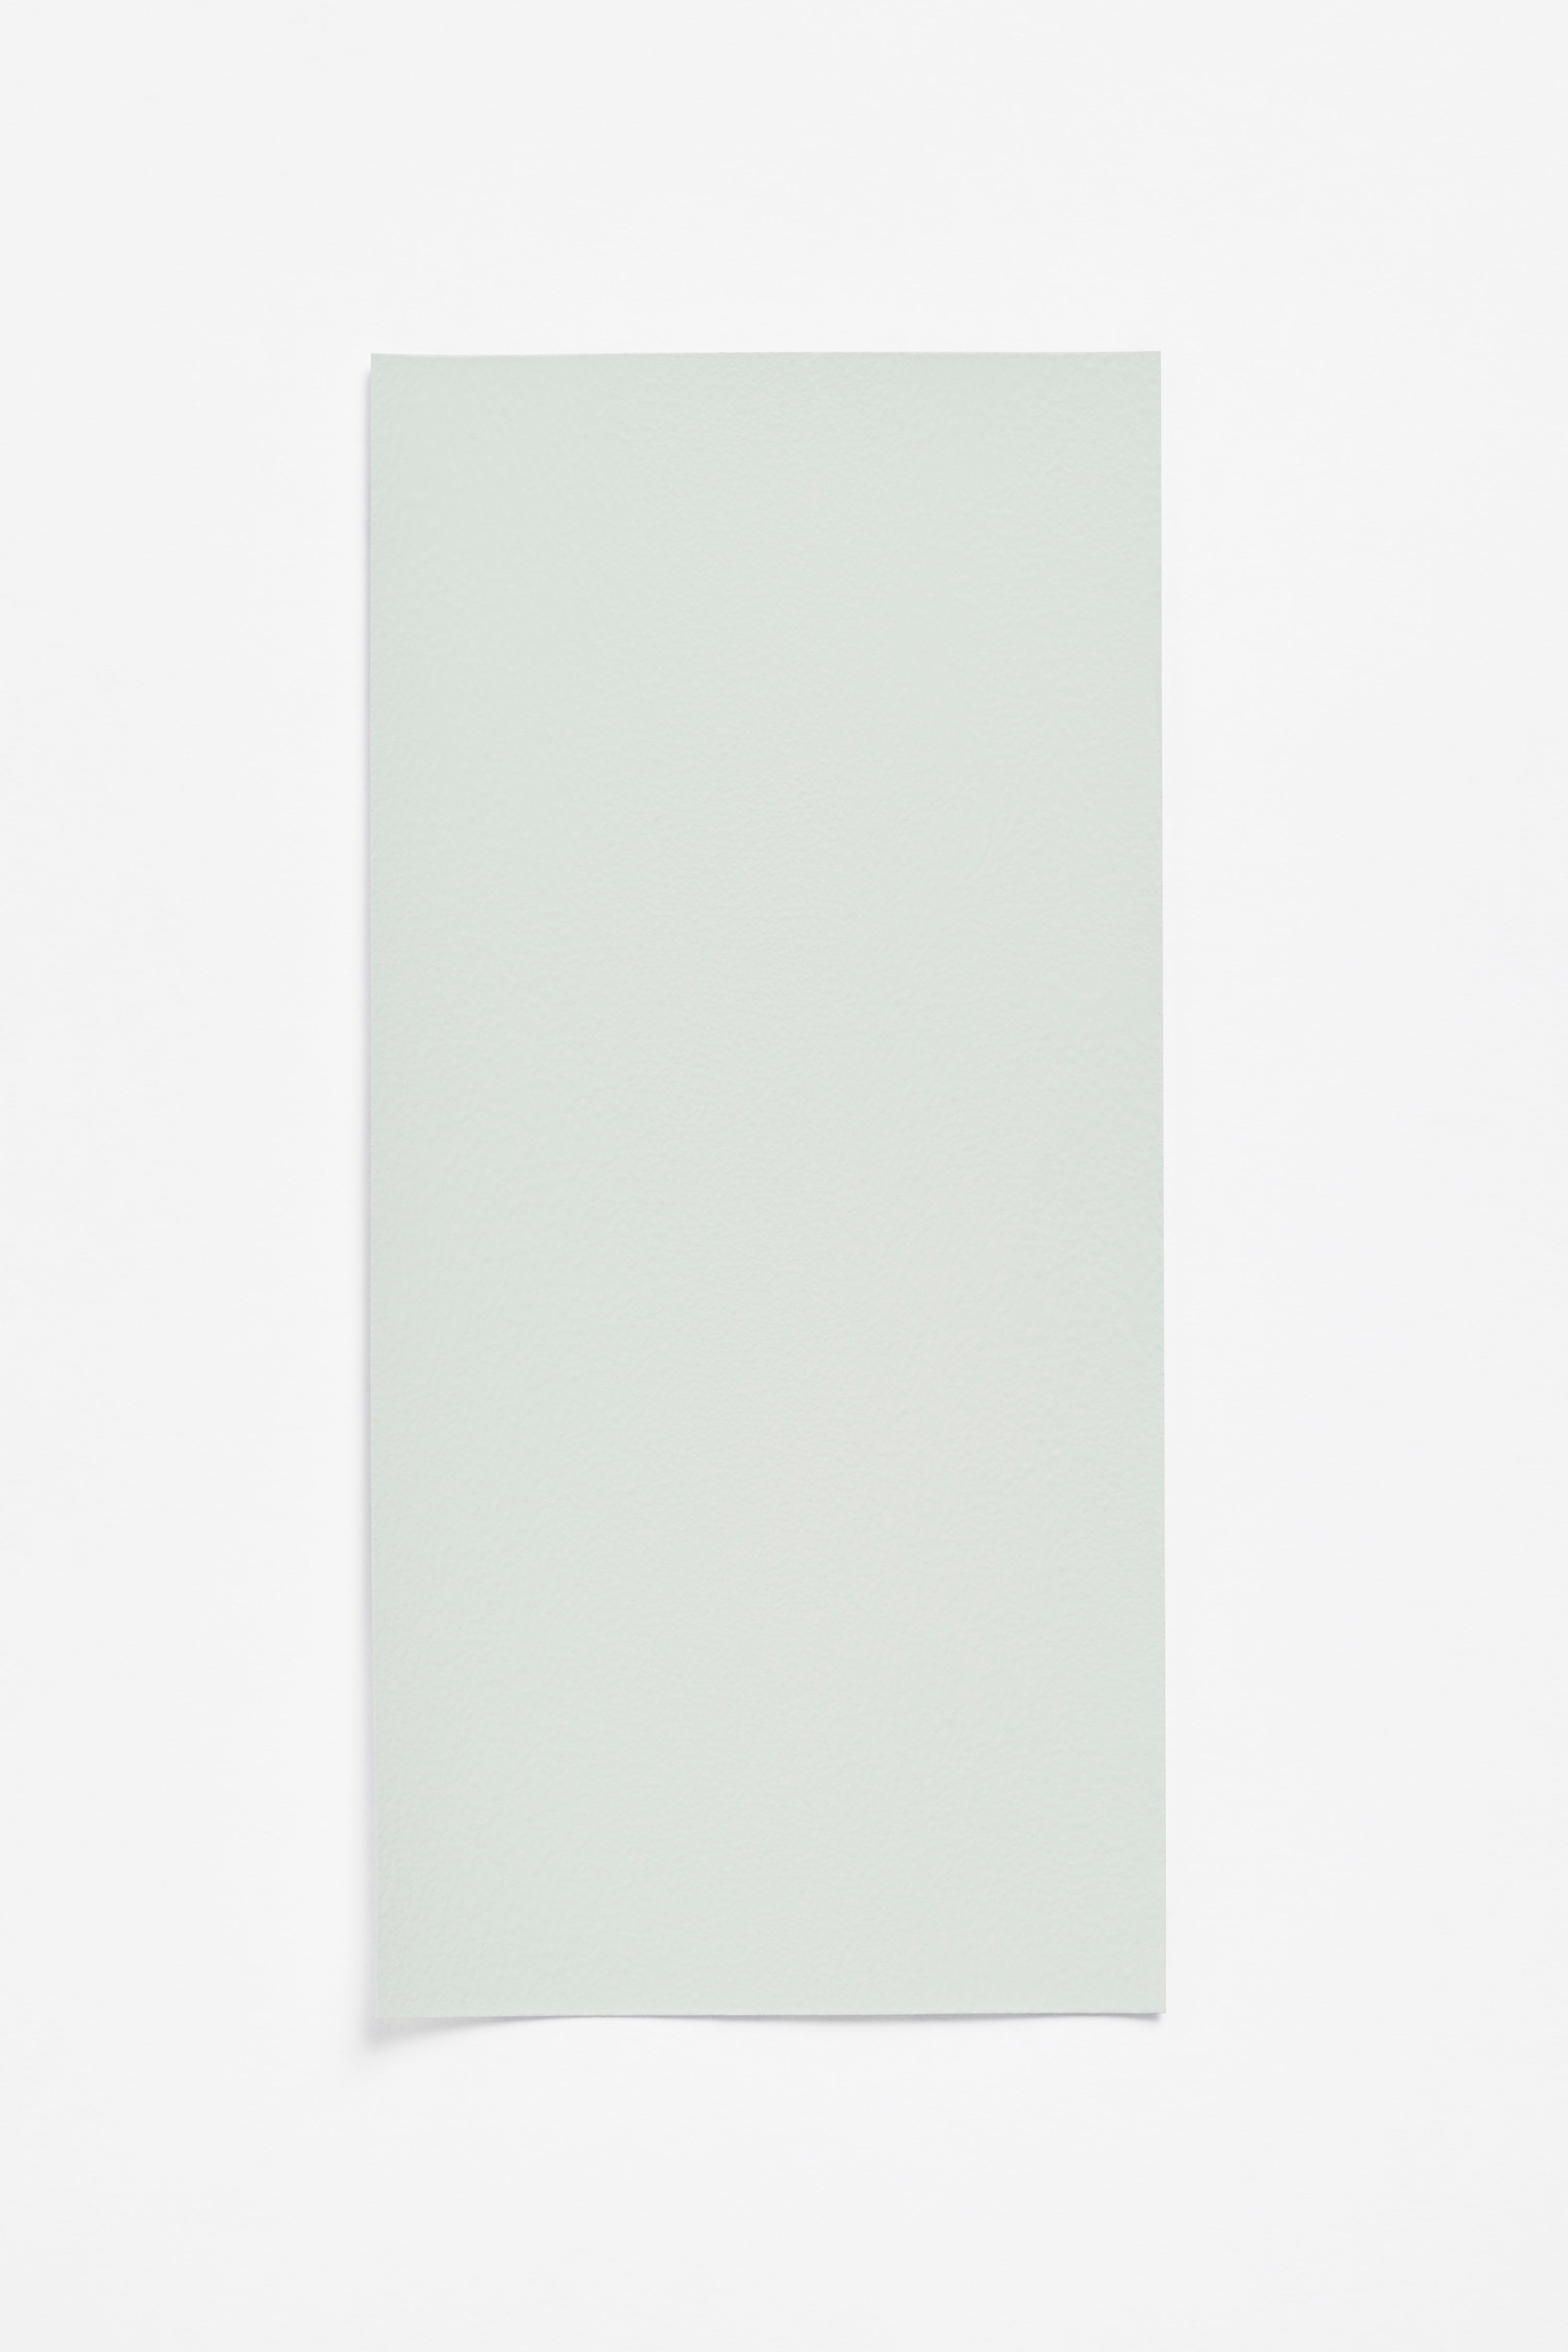 Vert Pâle — a paint colour developed by Ronan Bouroullec for Blēo